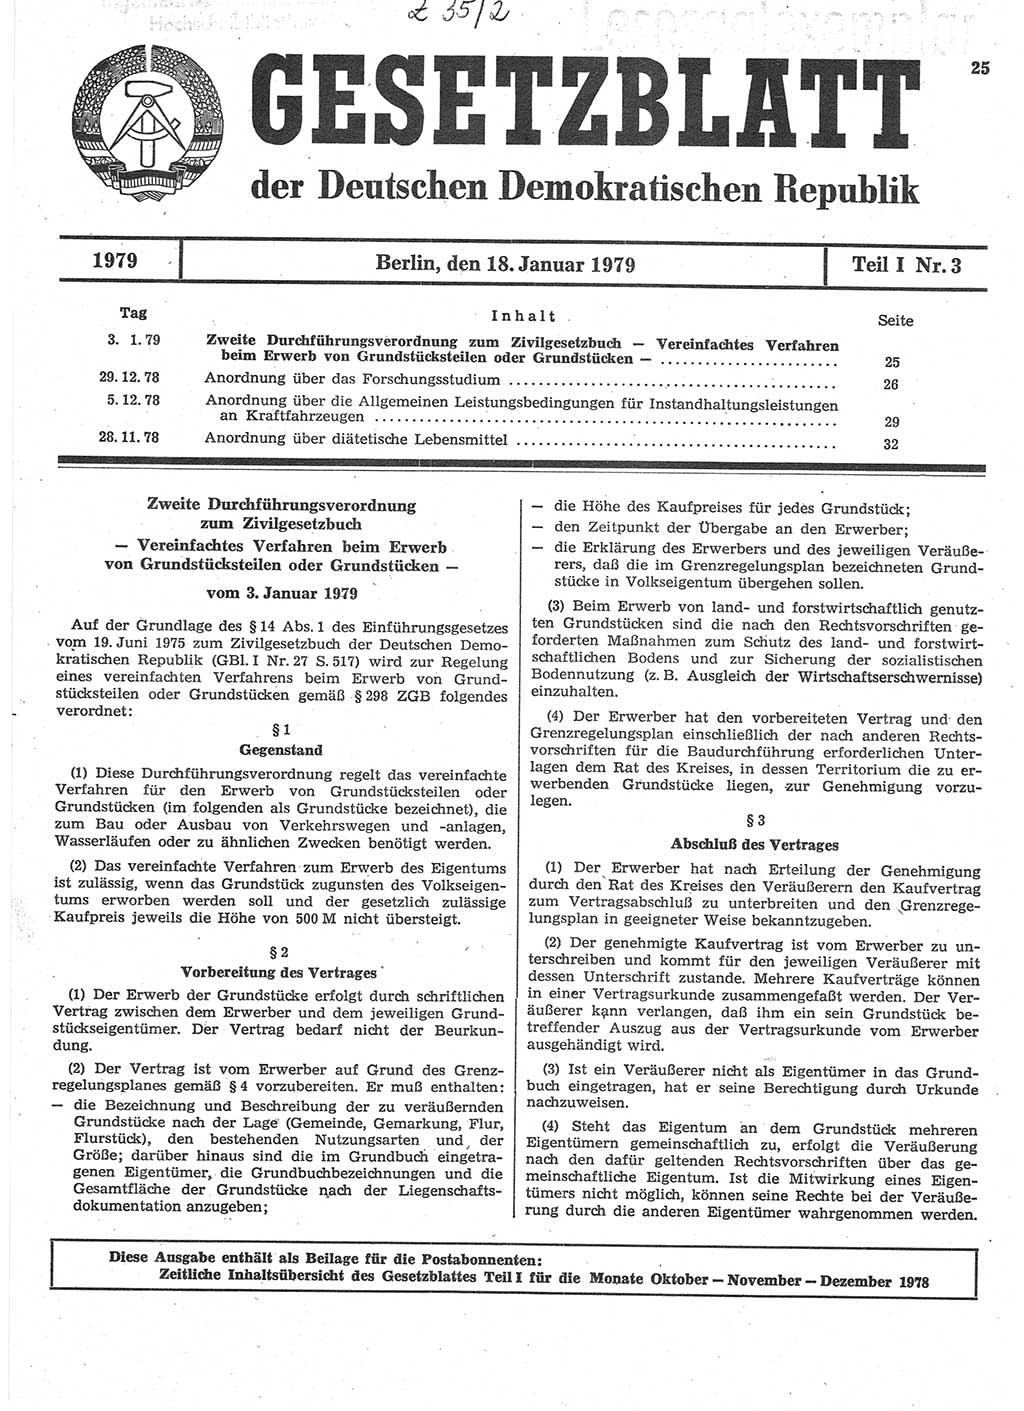 Gesetzblatt (GBl.) der Deutschen Demokratischen Republik (DDR) Teil Ⅰ 1979, Seite 25 (GBl. DDR Ⅰ 1979, S. 25)